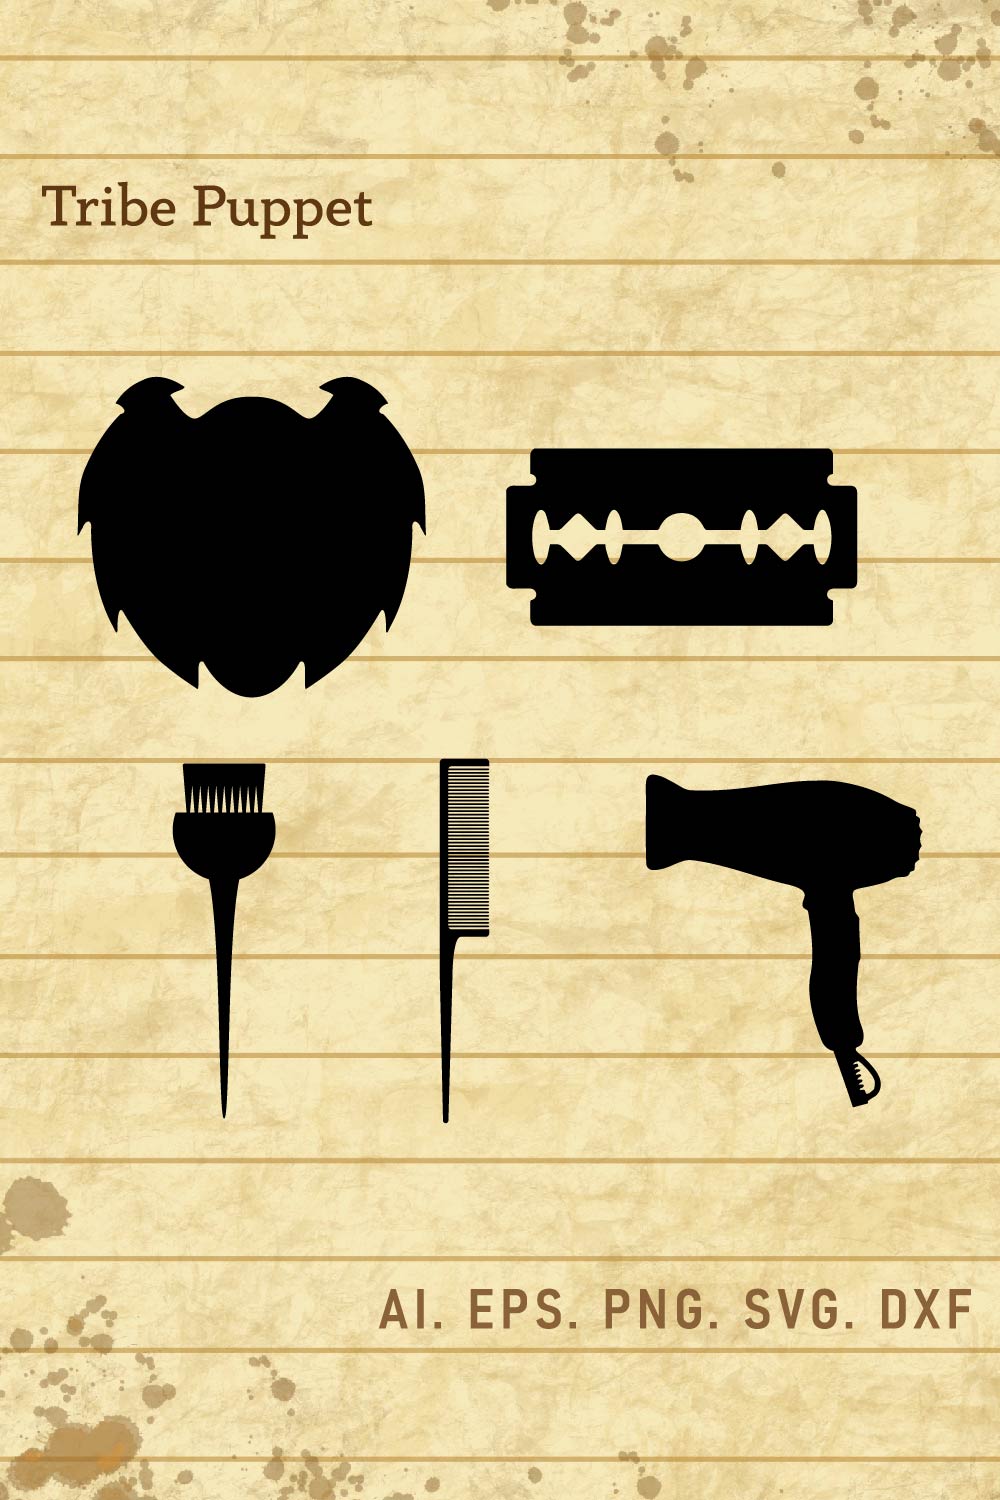 Barber Hairdresser Design pinterest preview image.